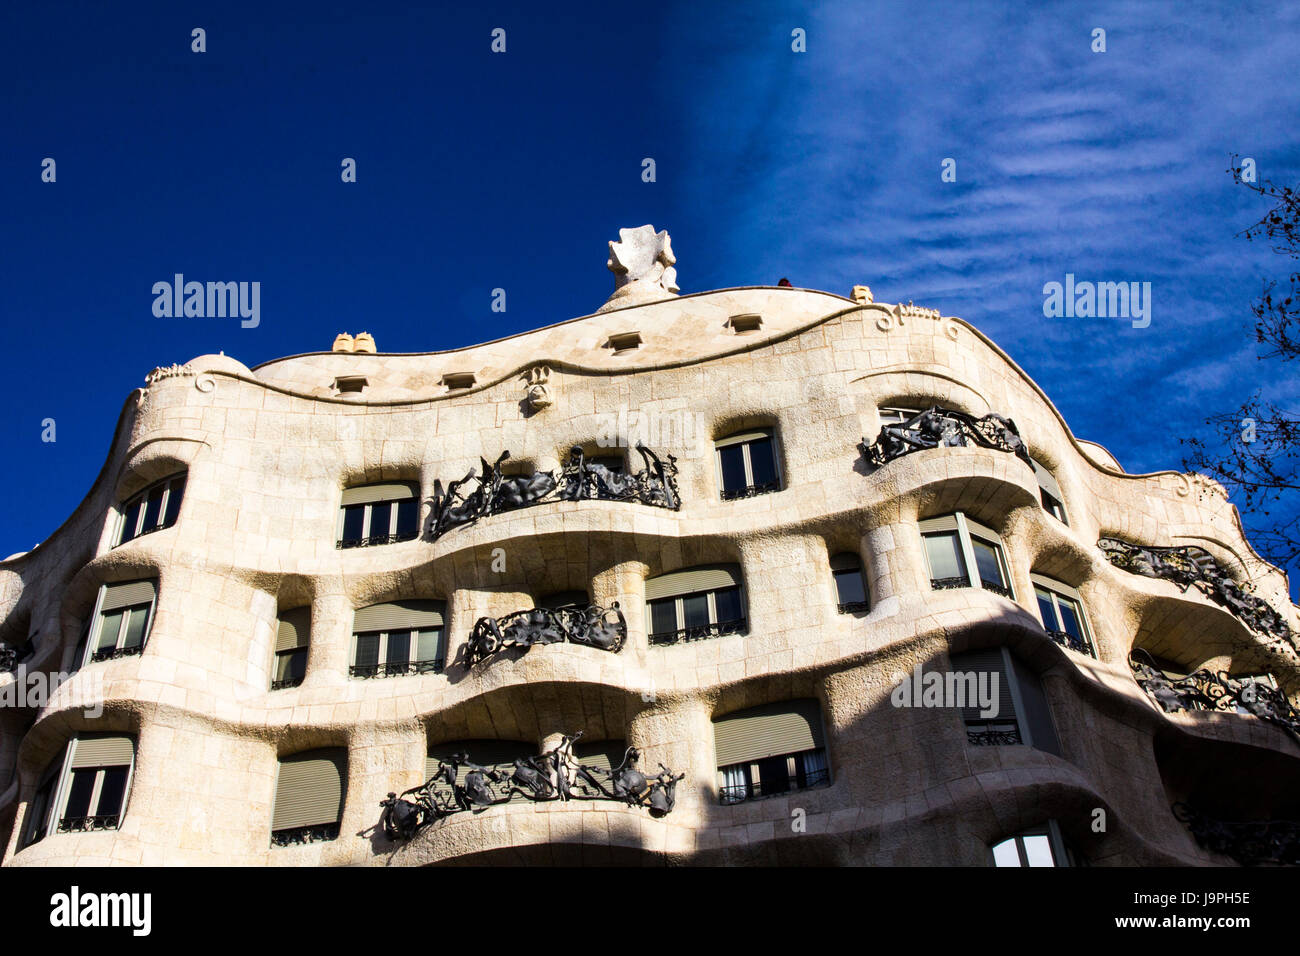 Casa Mila, popolarmente chiamata La Pedrera, è un edificio Modernista di Gaudi notevole per la sua facciata ondulata e la torsione balconi in ferro battuto. Foto Stock